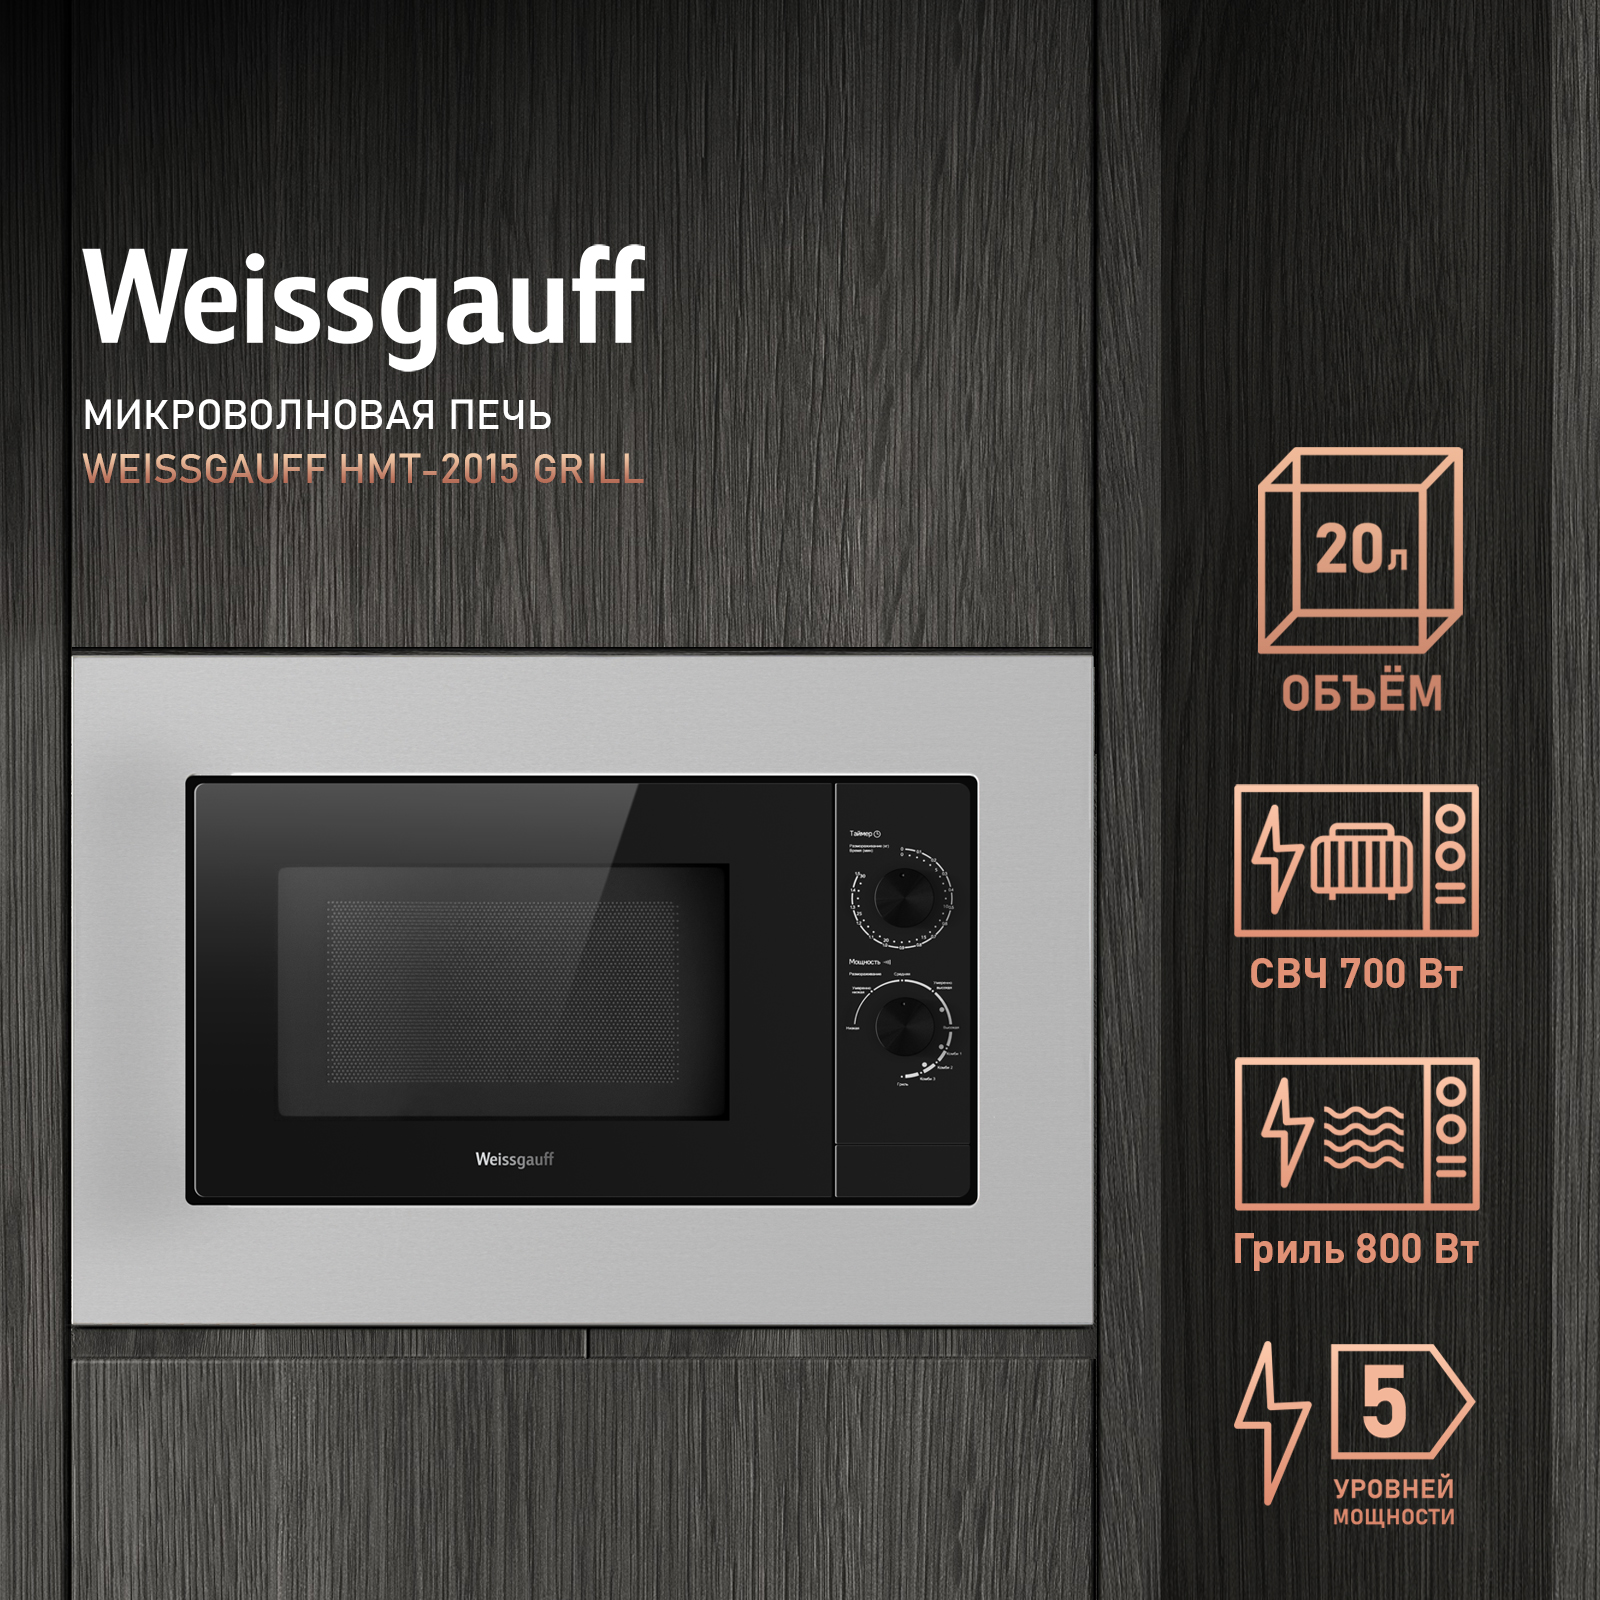 Встраиваемая микроволновая печь Weissgauff HMT-2015 Grill серебристая встраиваемая микроволновая печь weissgauff hmt 720 bx grill